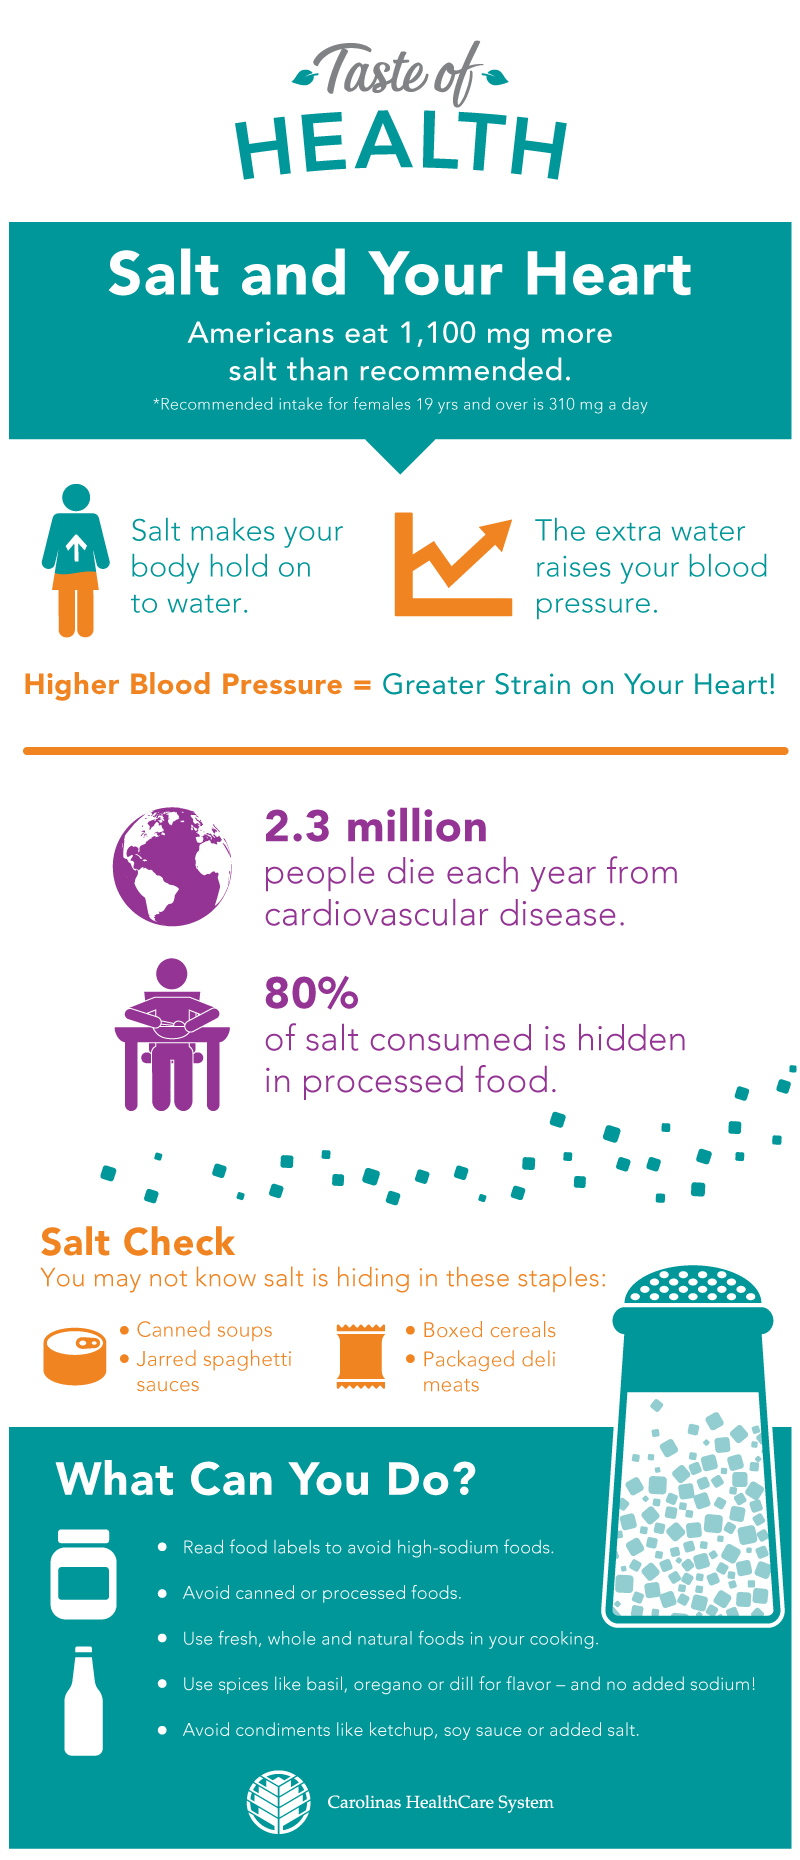 Skip the Salt, Prevent Heart Disease